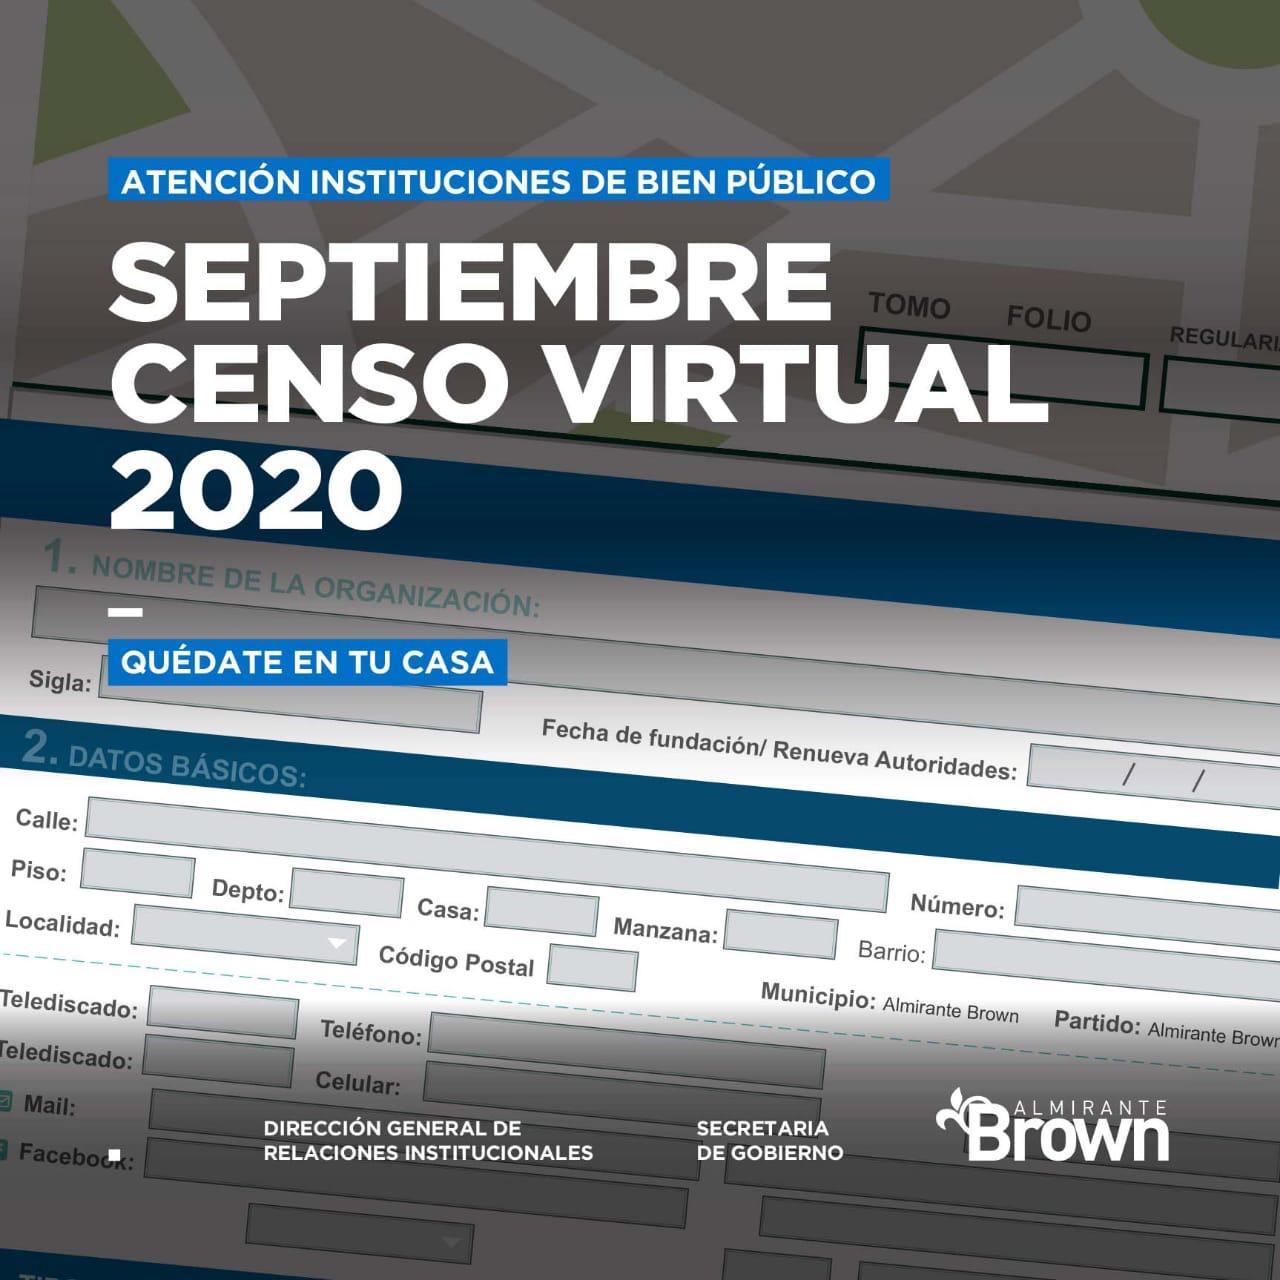 CENSO VIRTUAL Censo virtual de instituciones